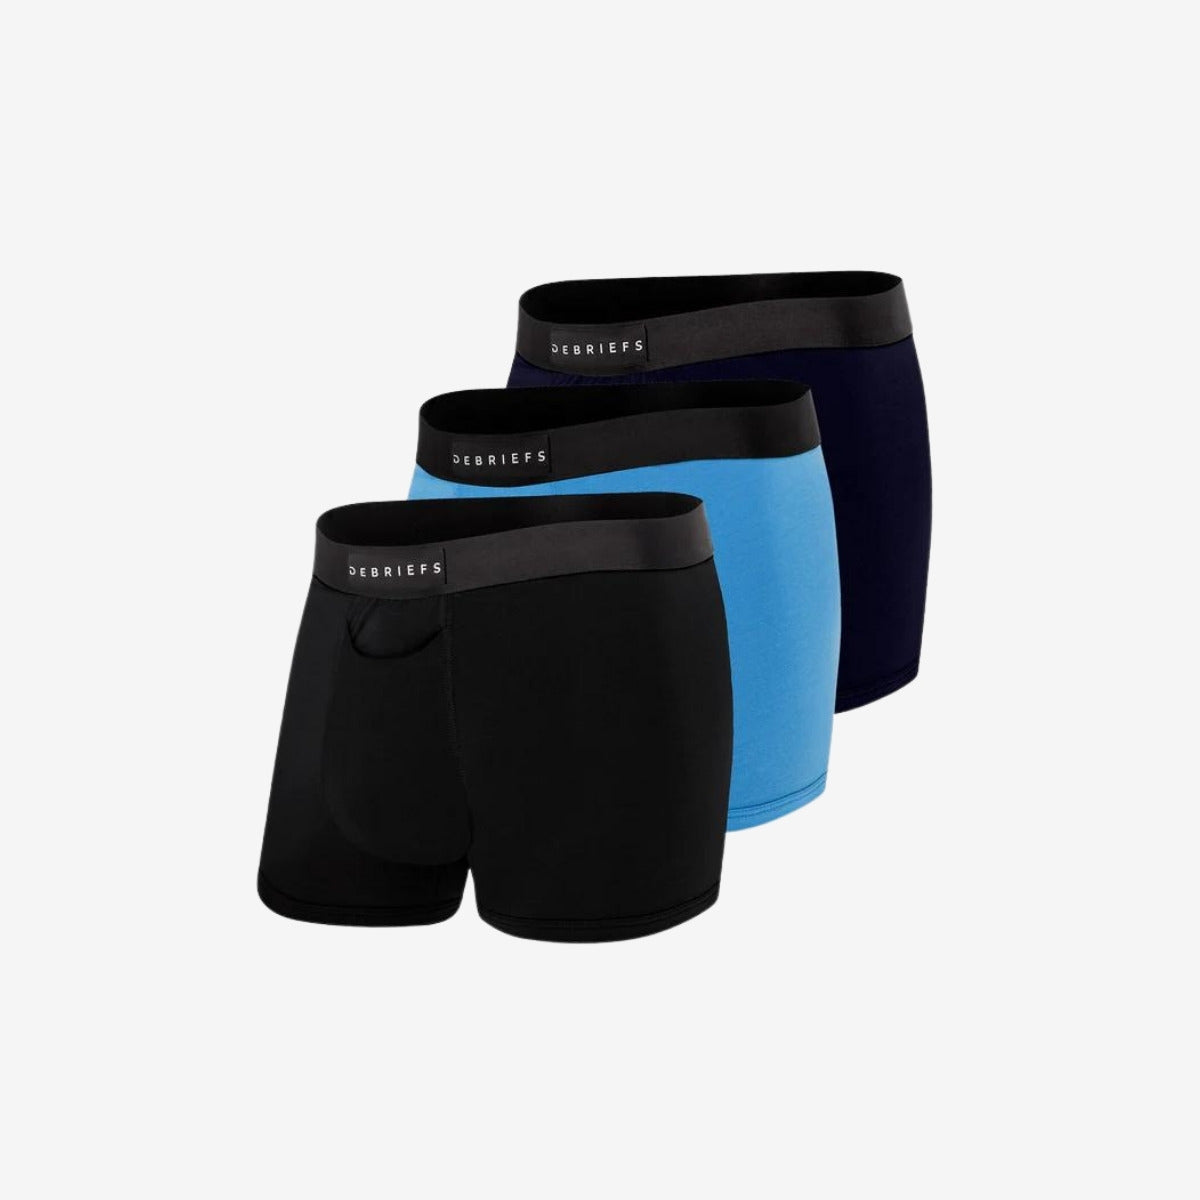 Mens Trunks Underwear Australia 3 Pack - Black Blue Navy